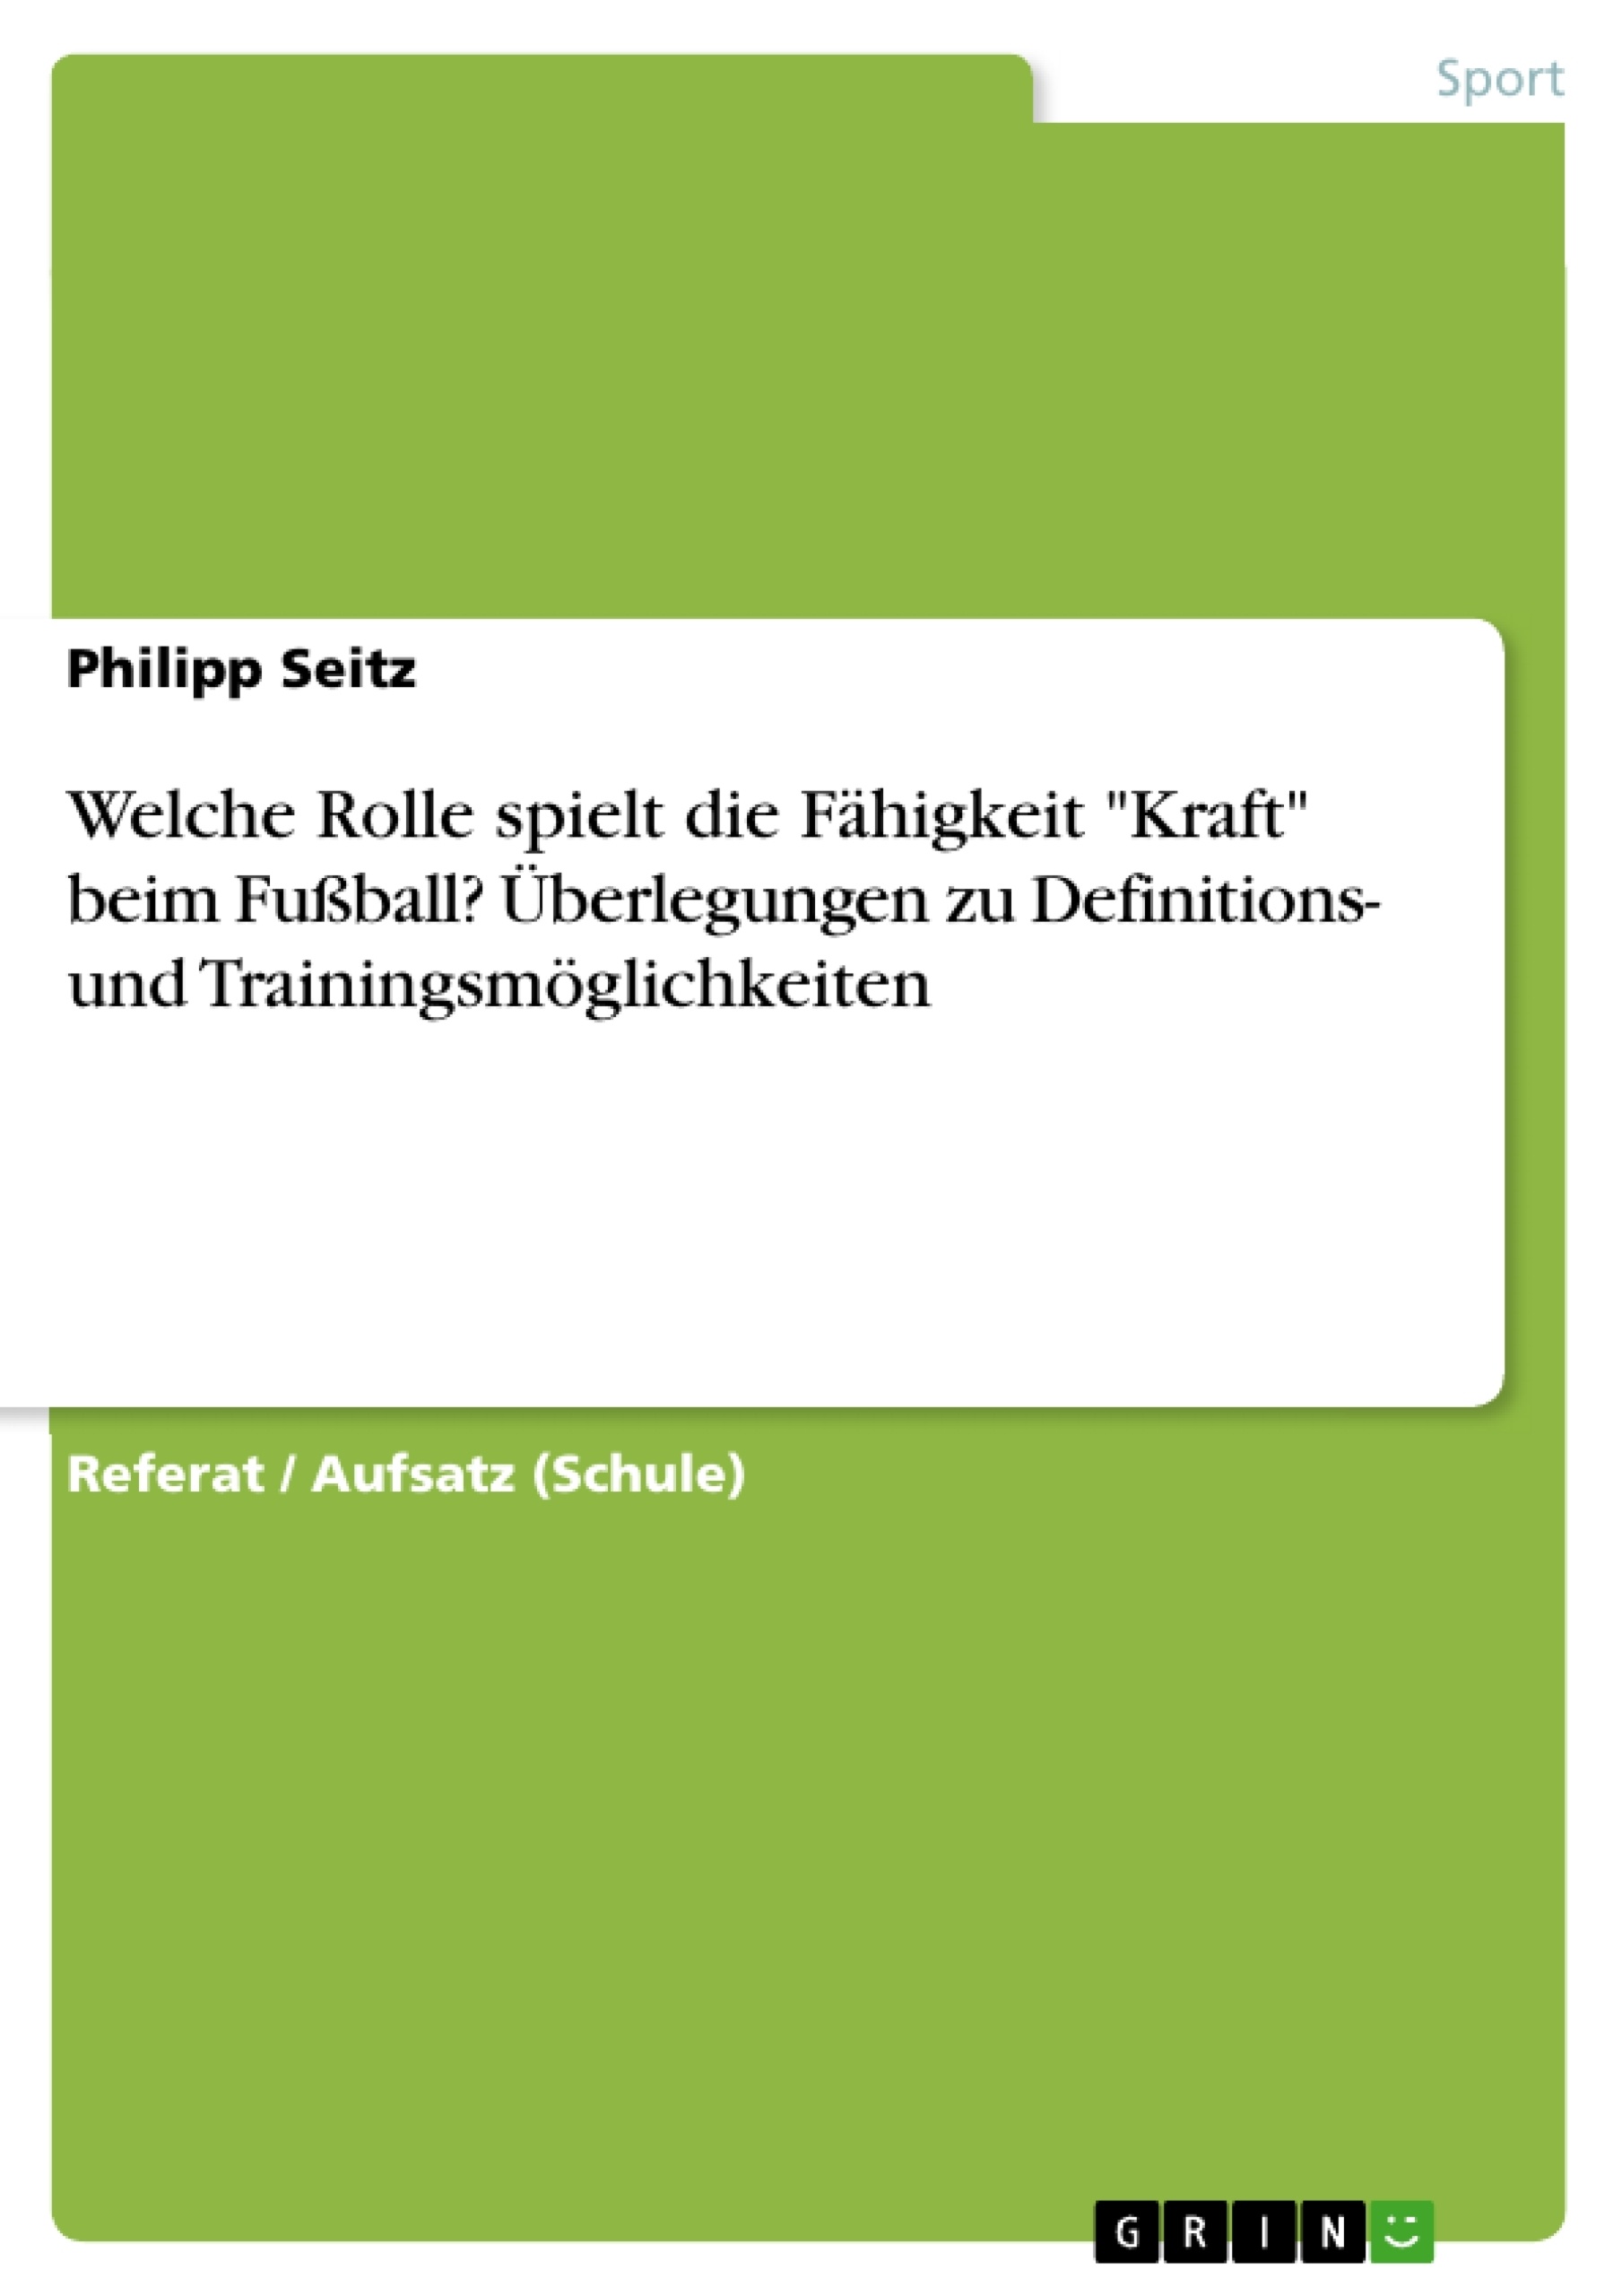 Titel: Welche Rolle spielt die Fähigkeit "Kraft" beim Fußball? Überlegungen zu Definitions- und Trainingsmöglichkeiten